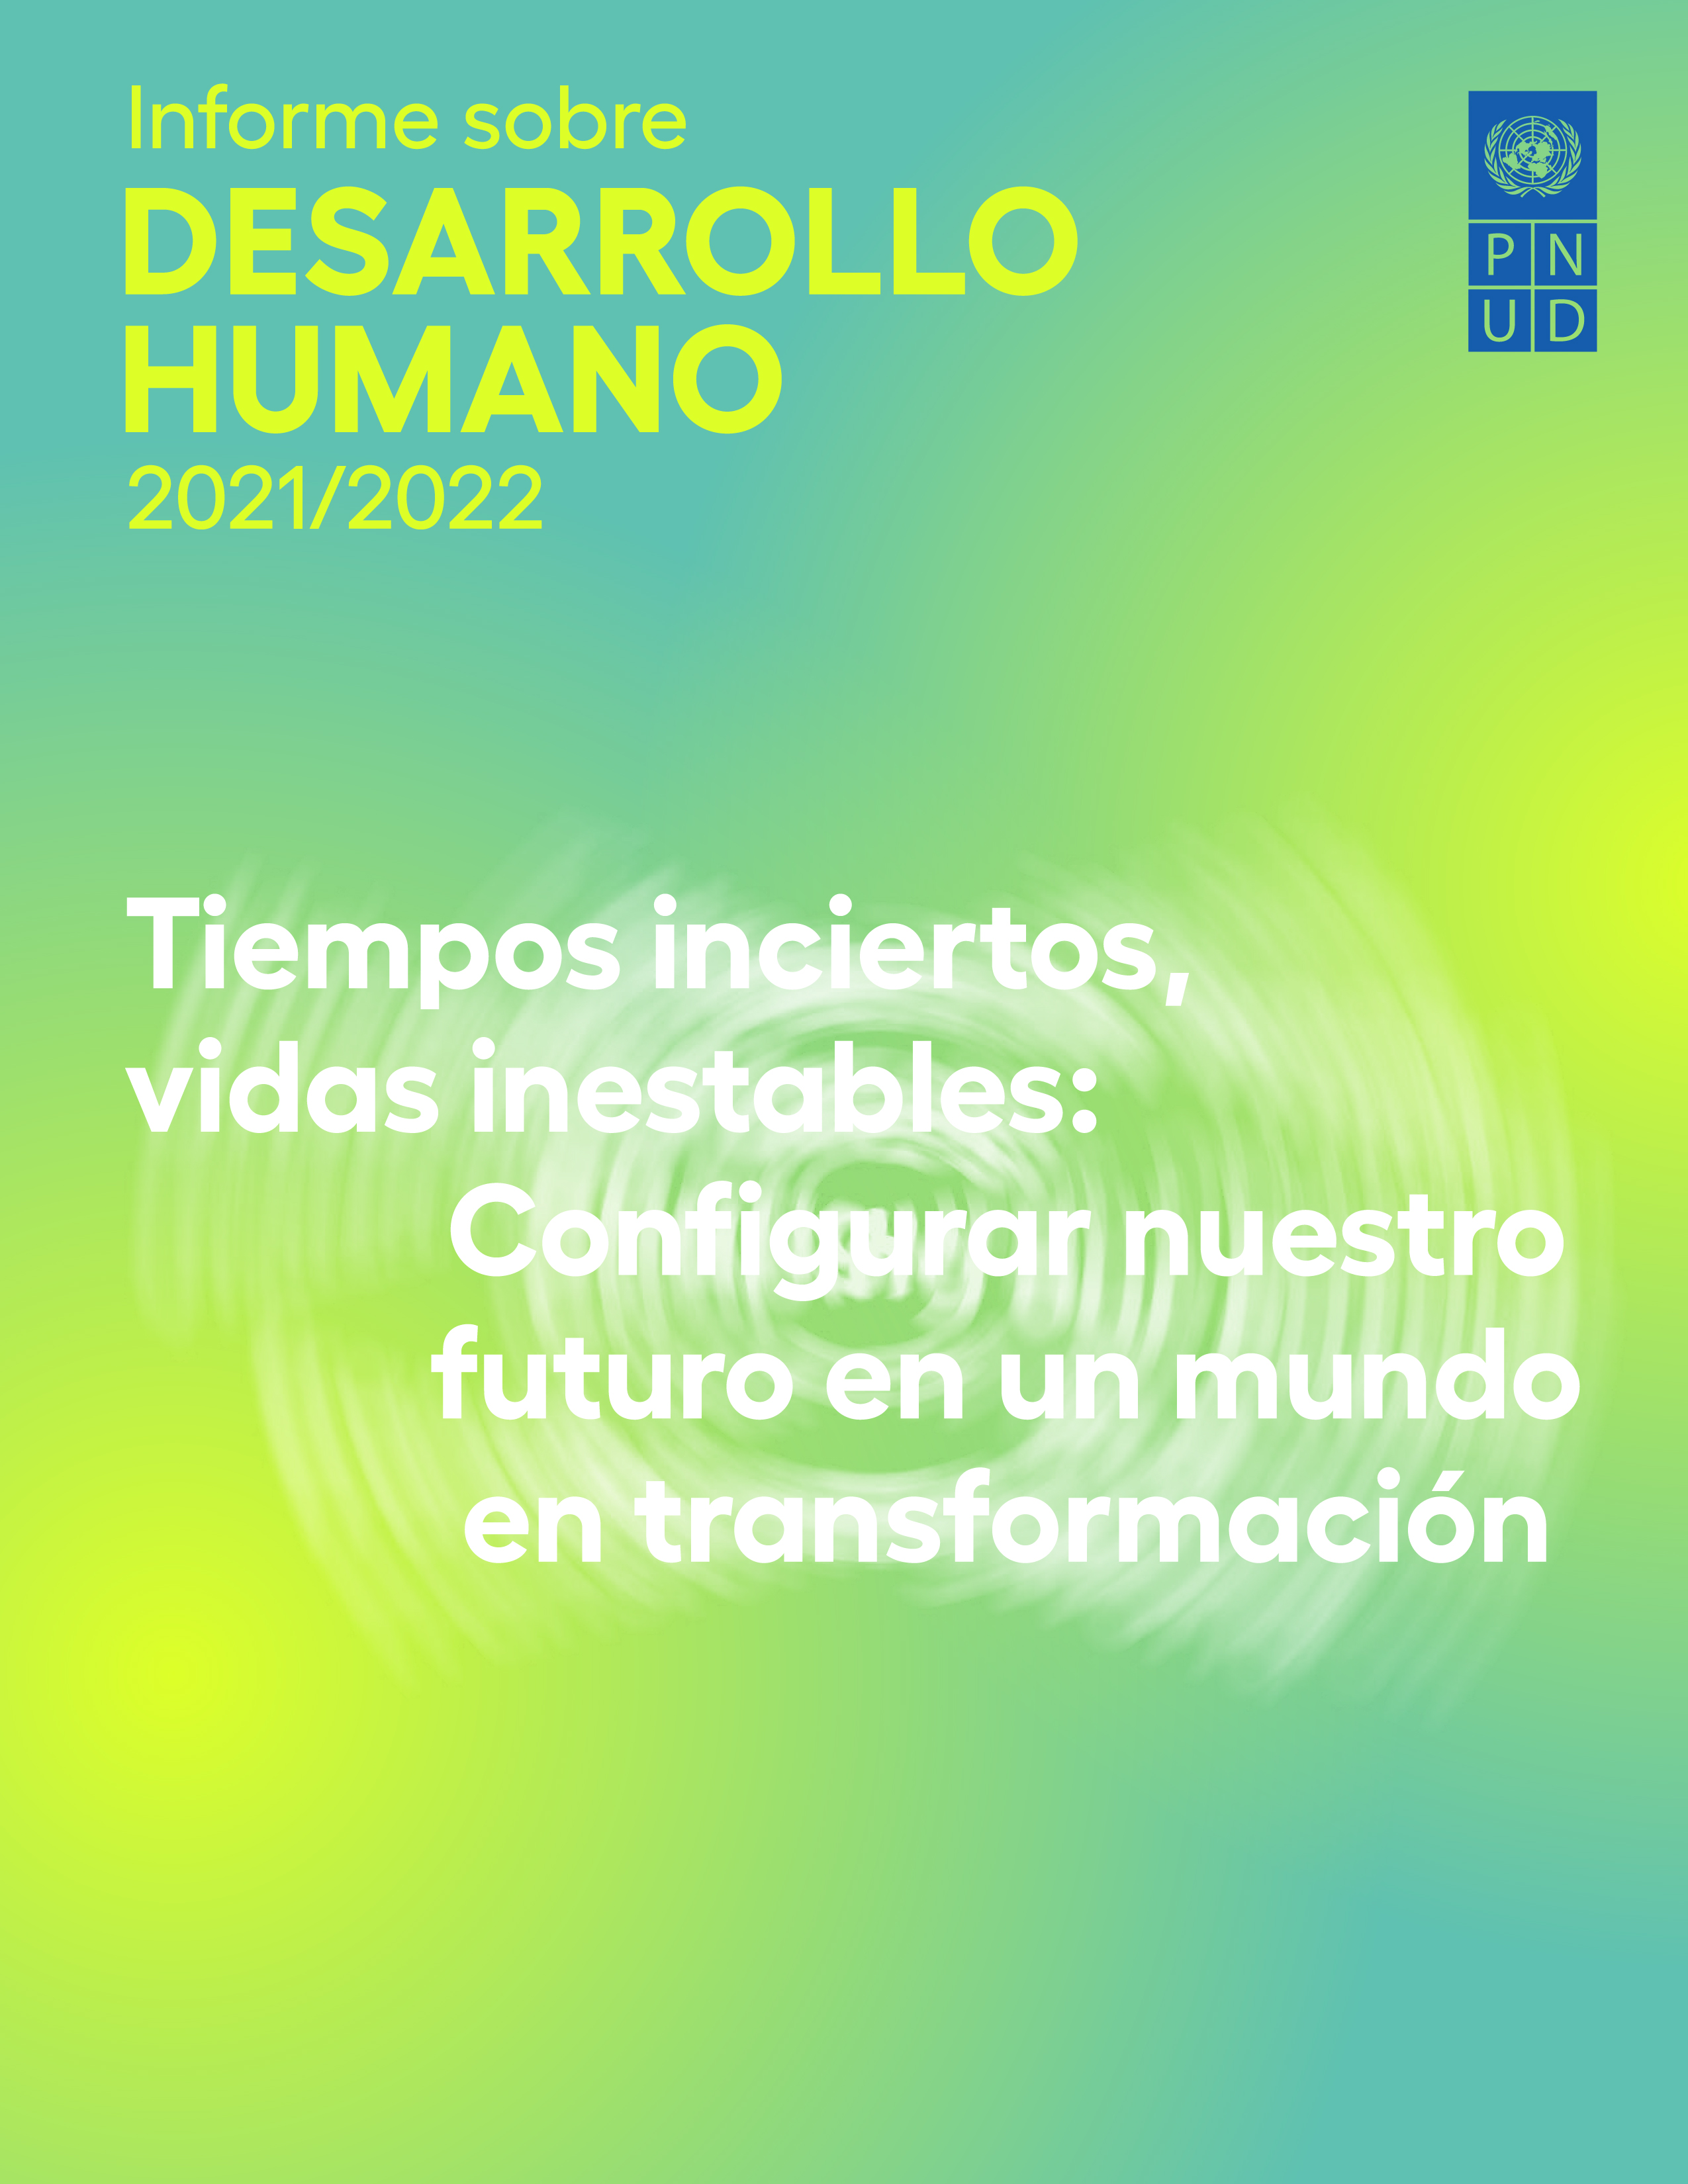 image of Informe sobre Desarrollo Humano 2021/2022